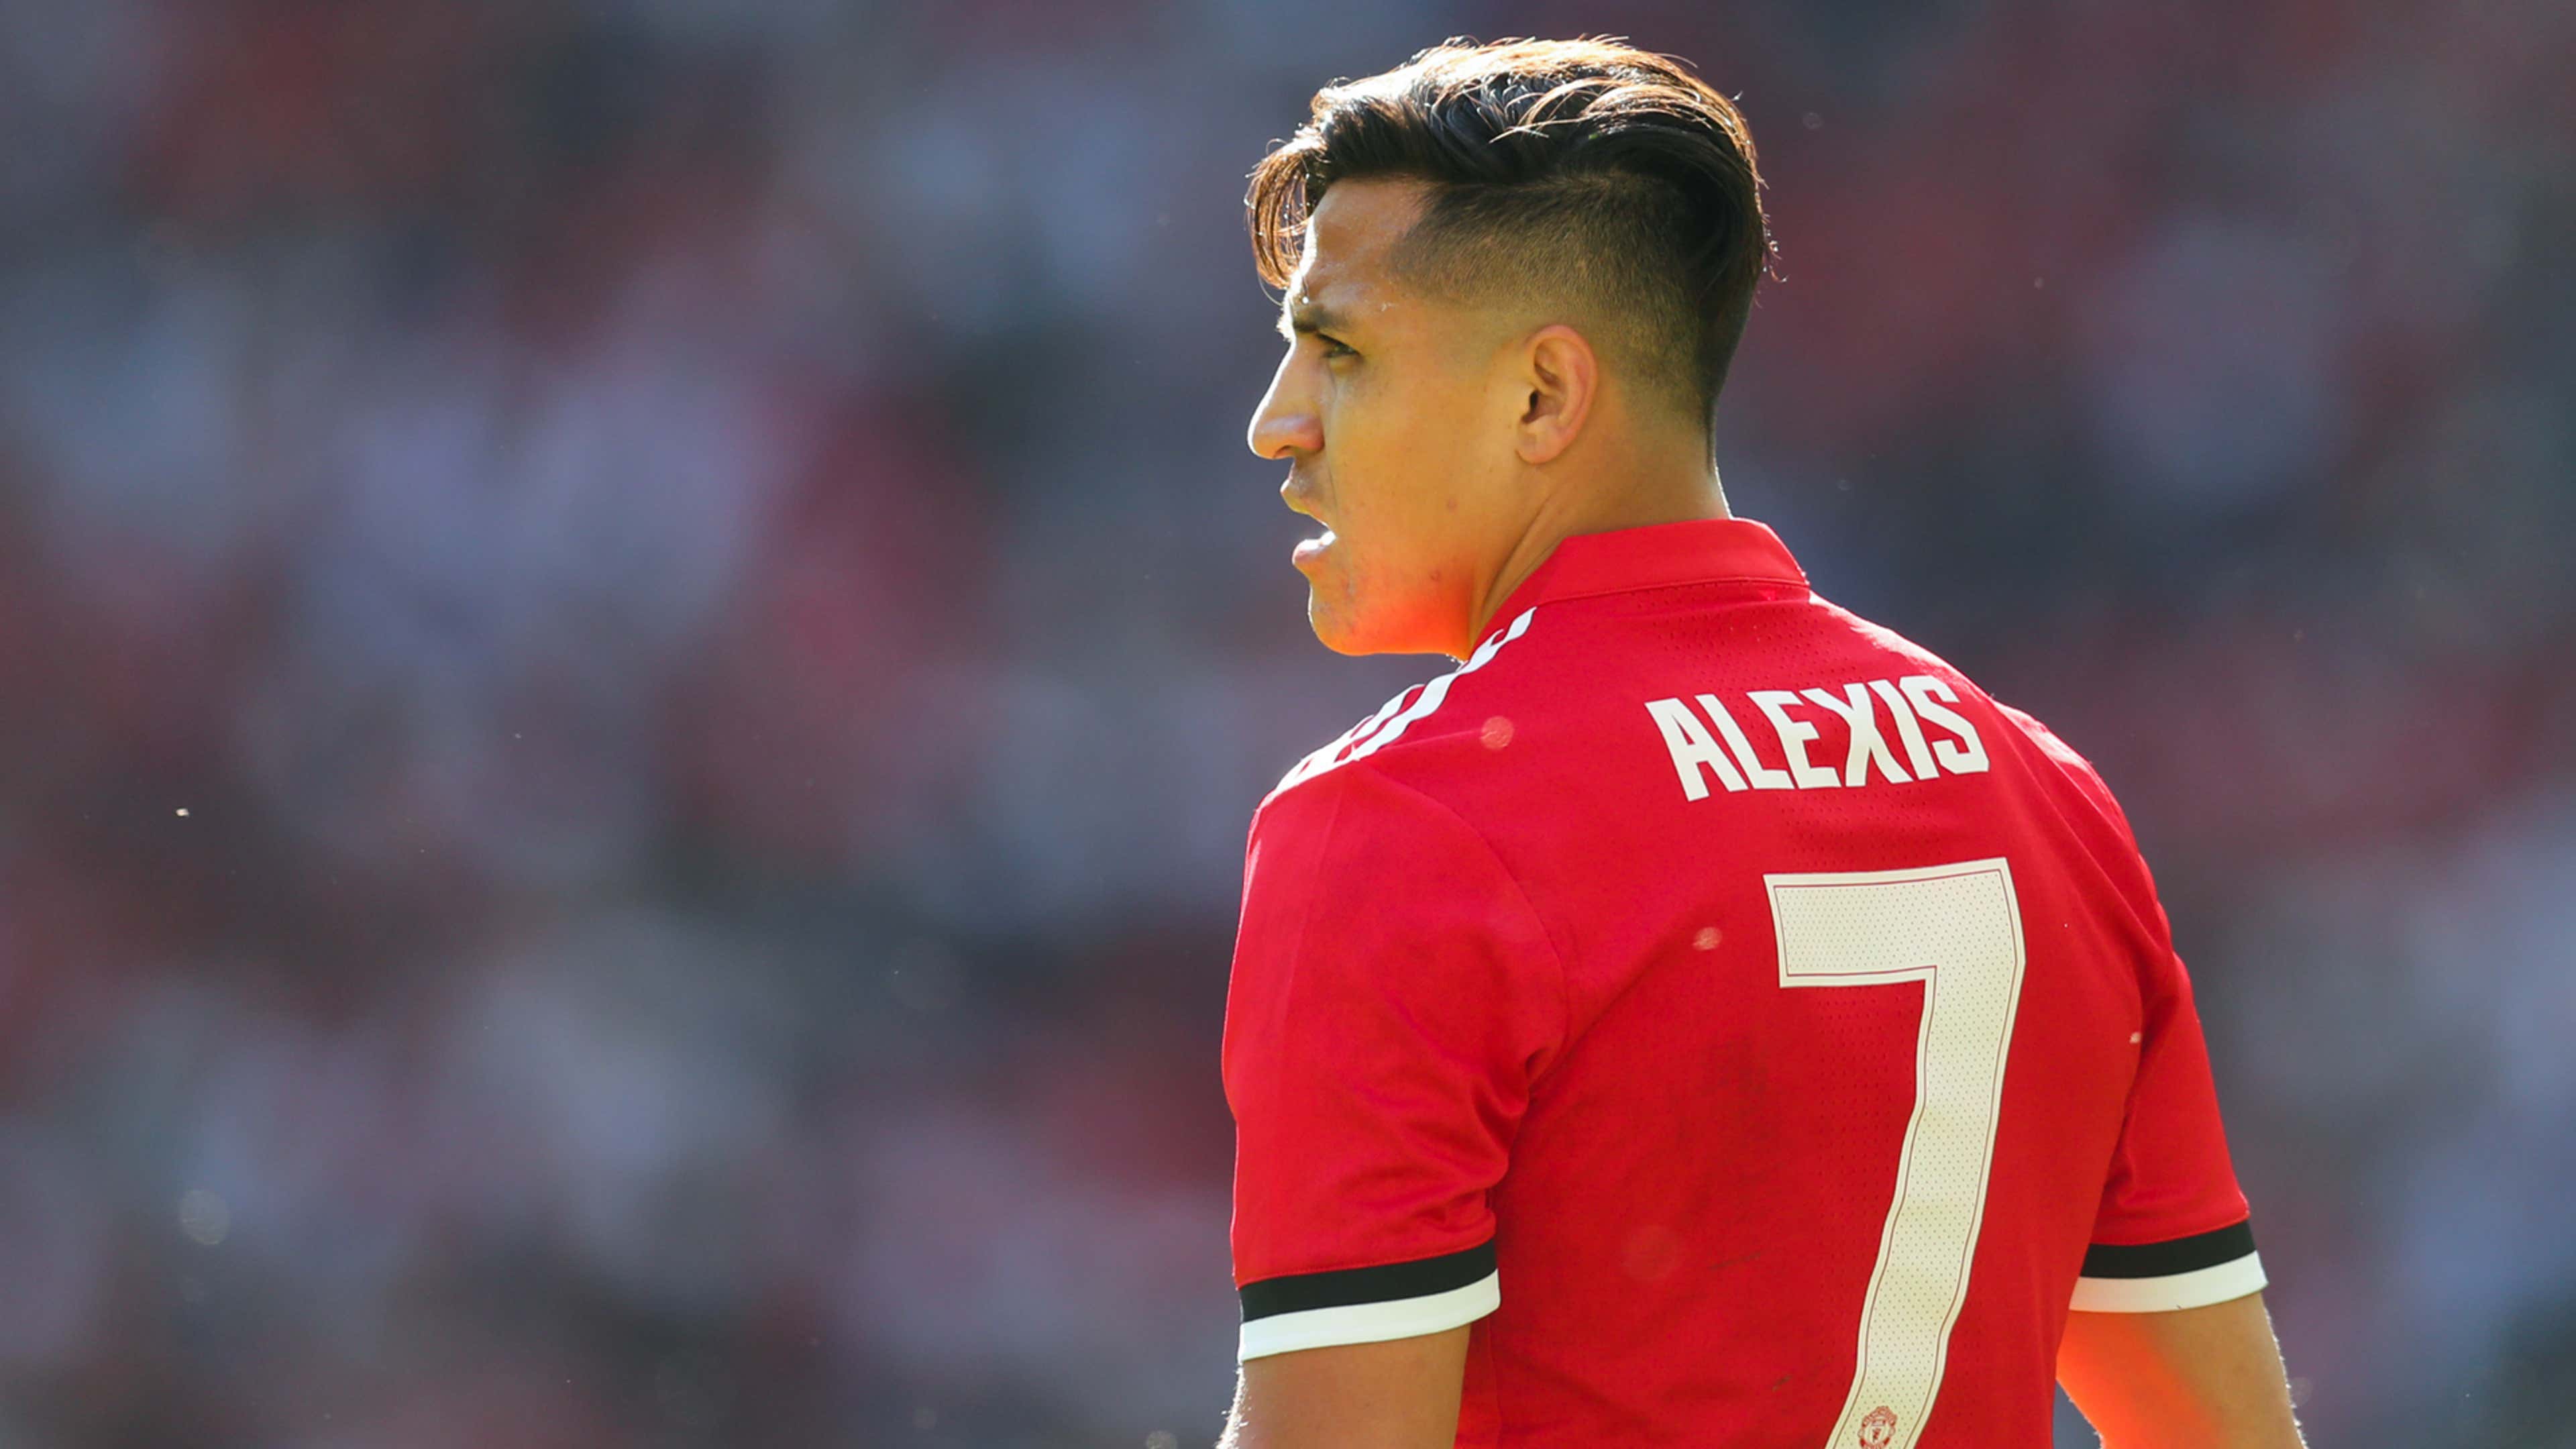 Alexis Sanchez Manchester United